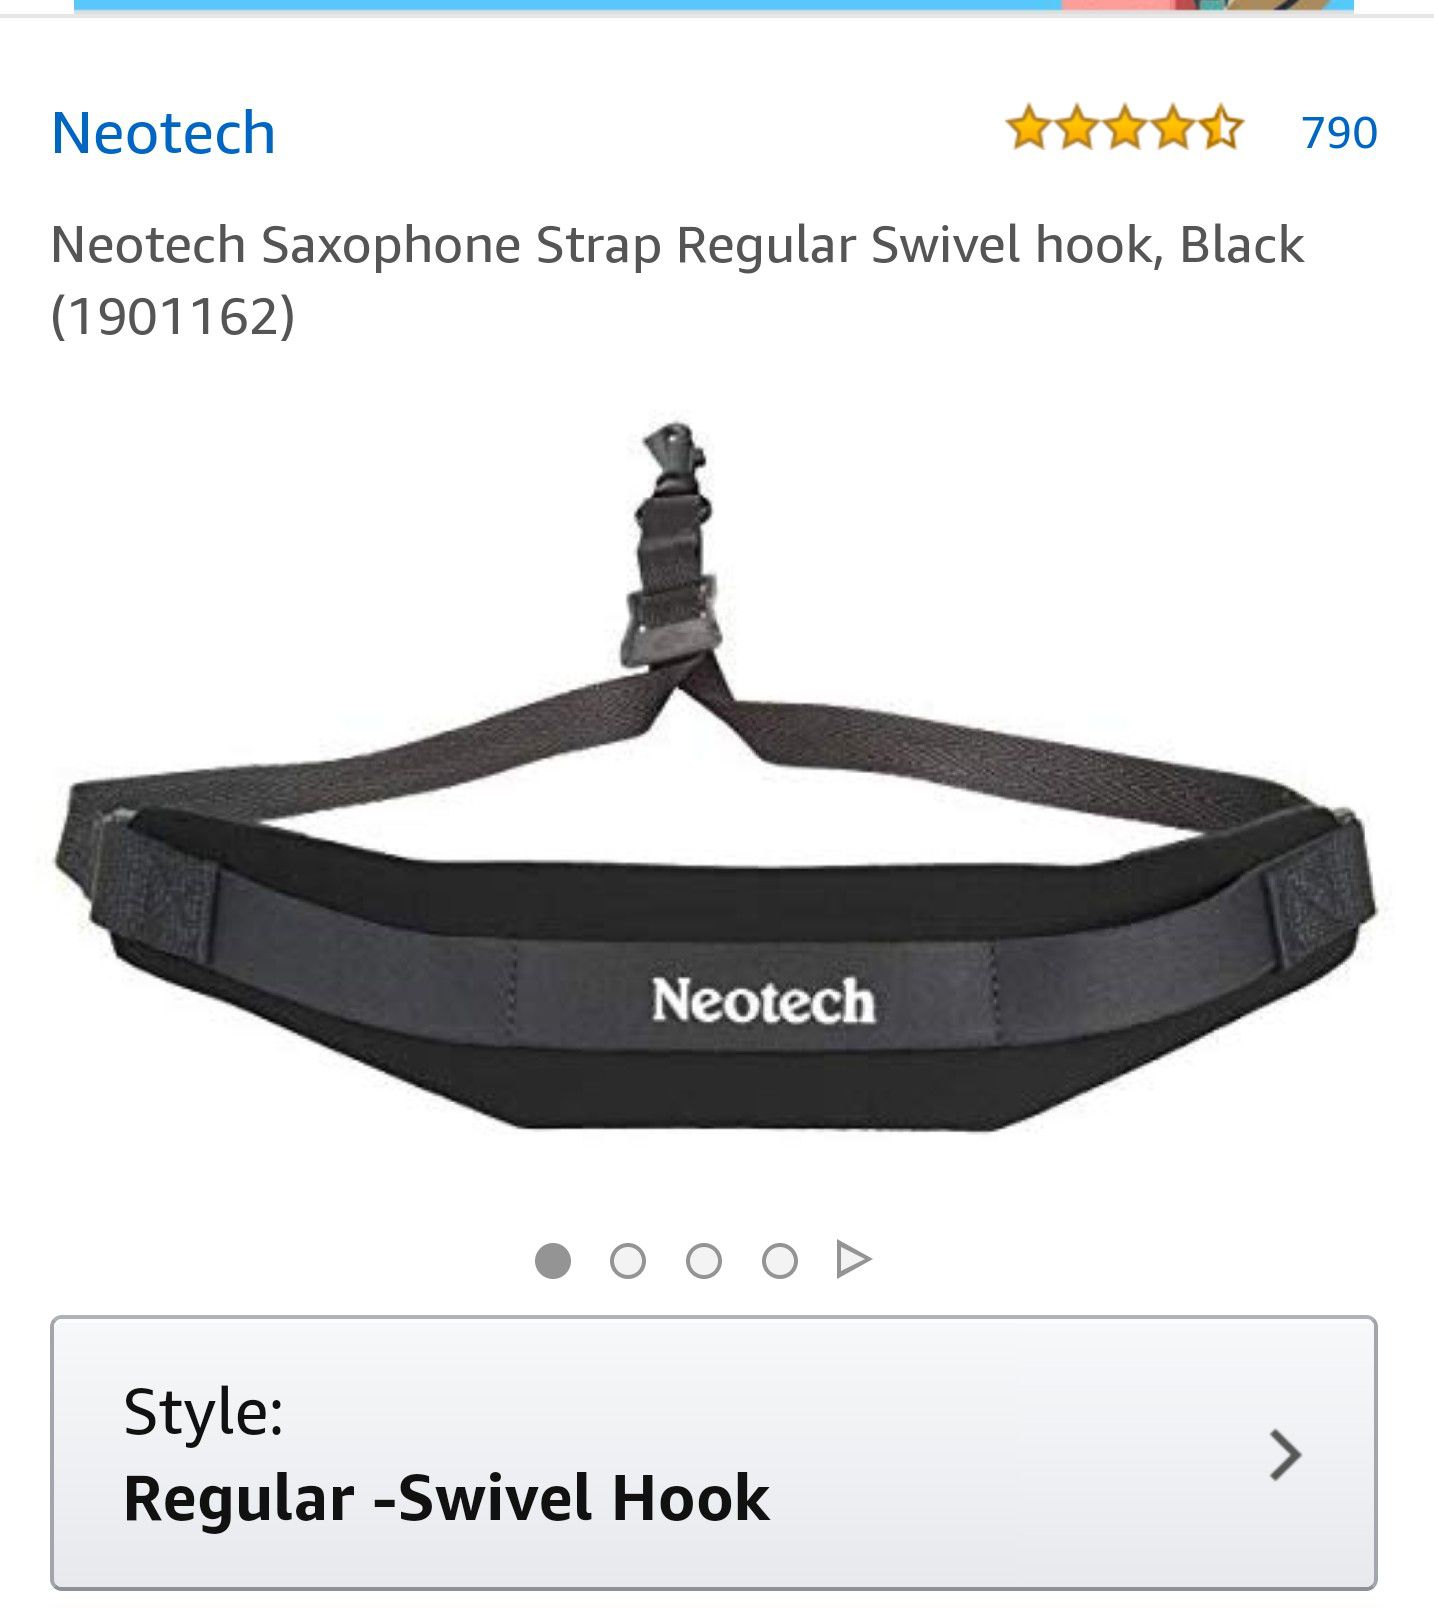 Neotech saxophone strap